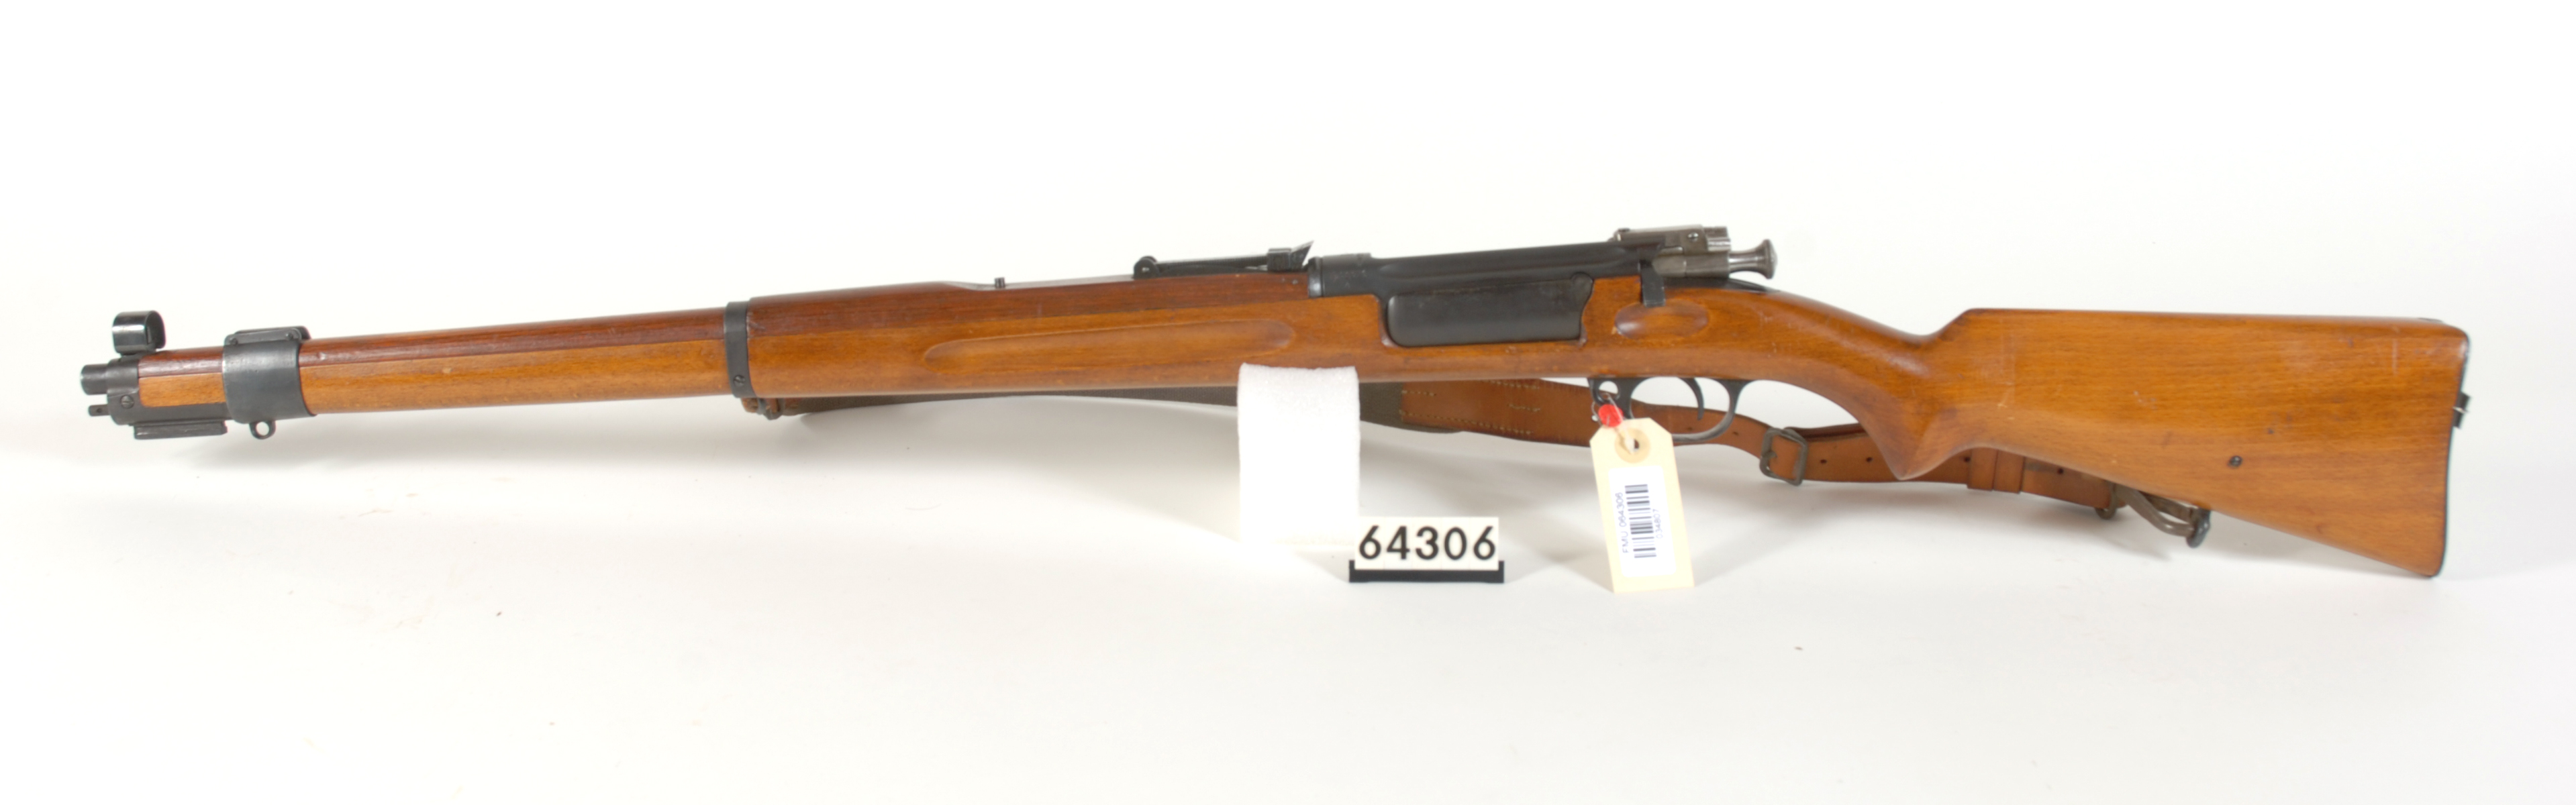 ./guns/rifle/bilder/Rifle-Kongsberg-Krag-M1912-FMU.064306c.jpg